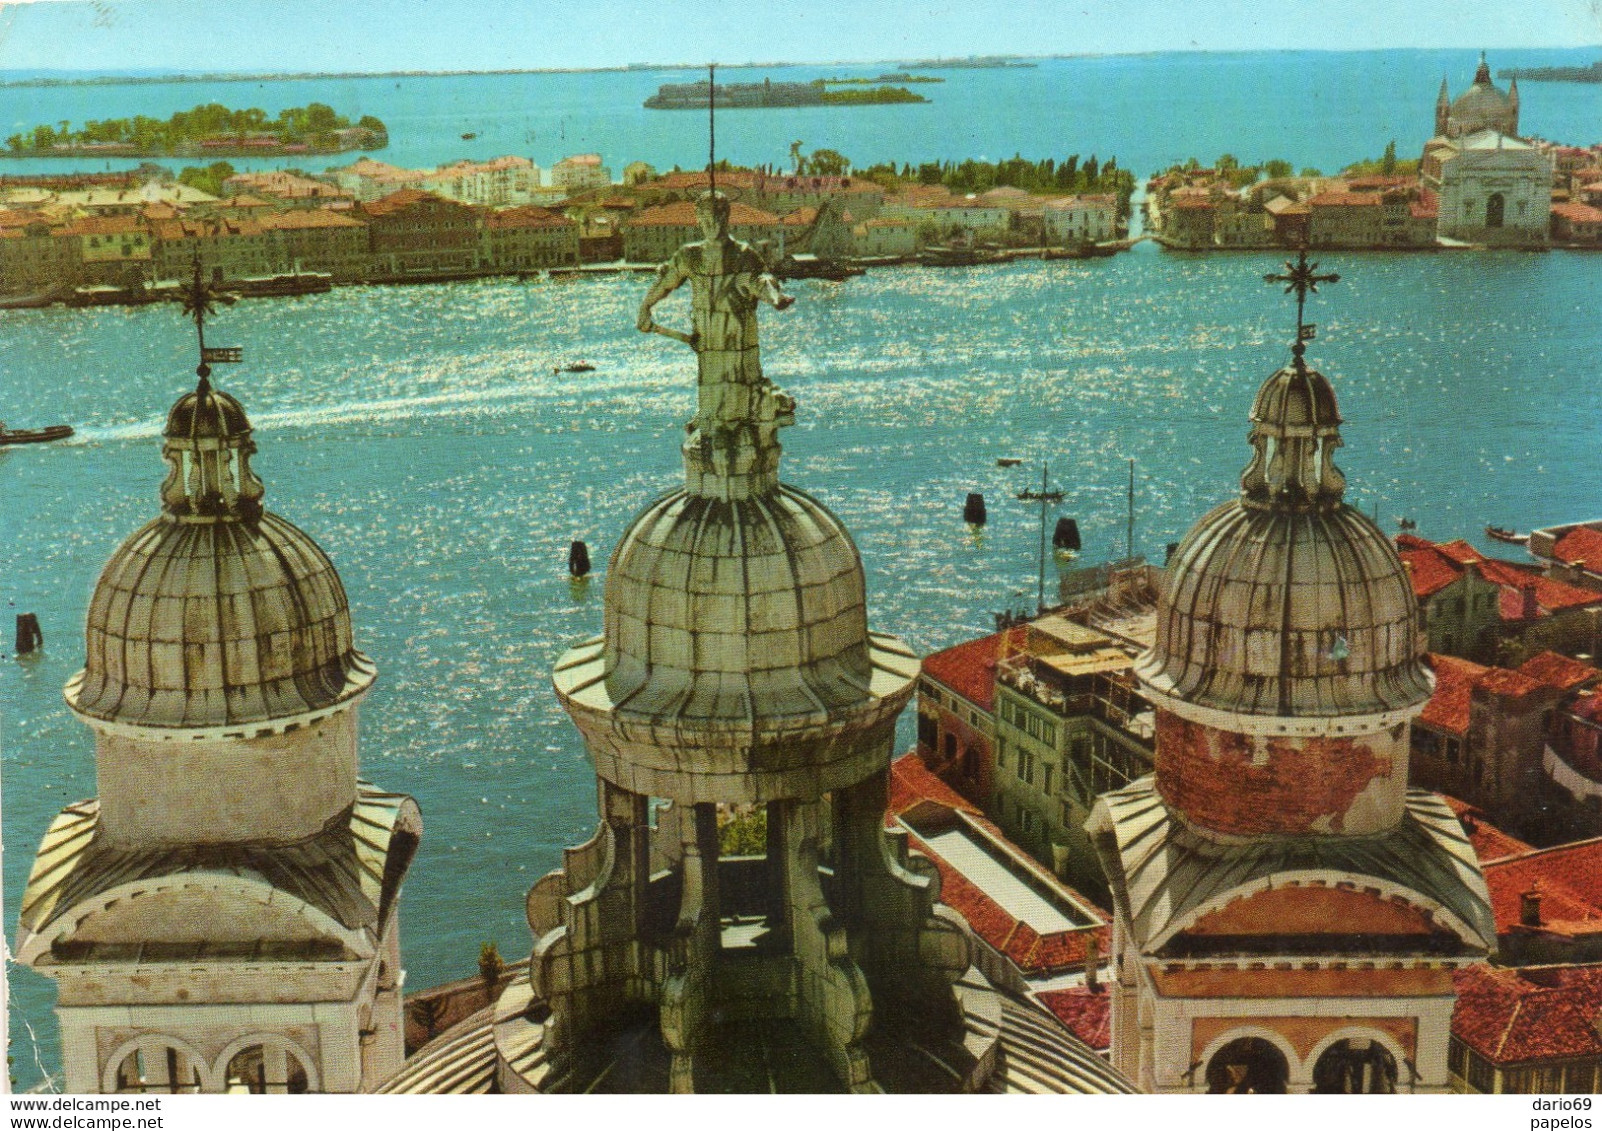 1962  CARTOLINA  VENEZIA - Venezia (Venice)